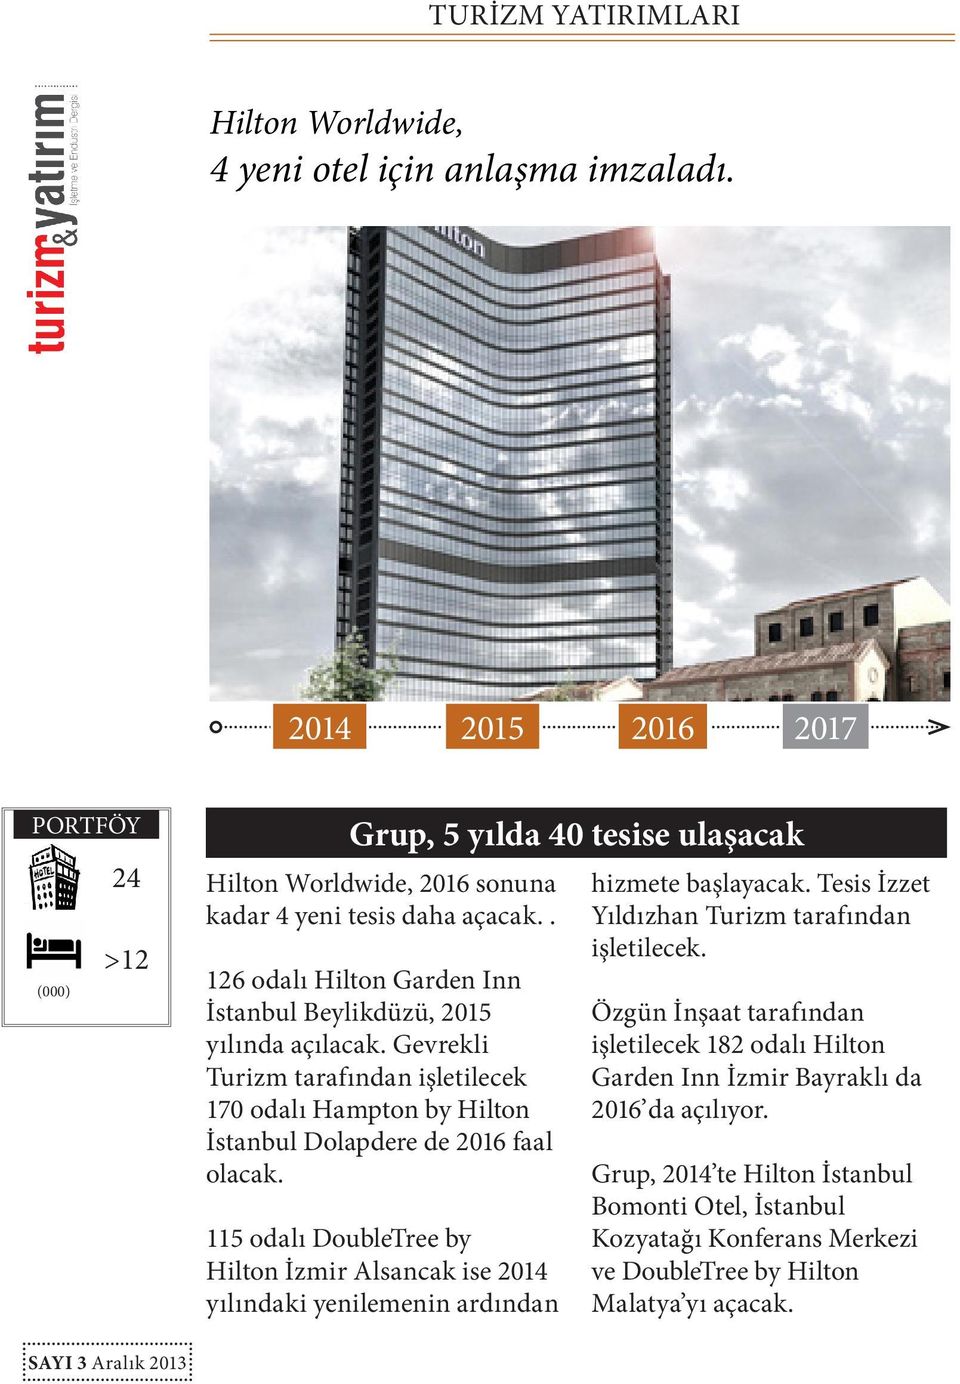 115 odalı DoubleTree by Hilton İzmir Alsancak ise yılındaki yenilemenin ardından hizmete başlayacak. Tesis İzzet Yıldızhan Turizm tarafından işletilecek.